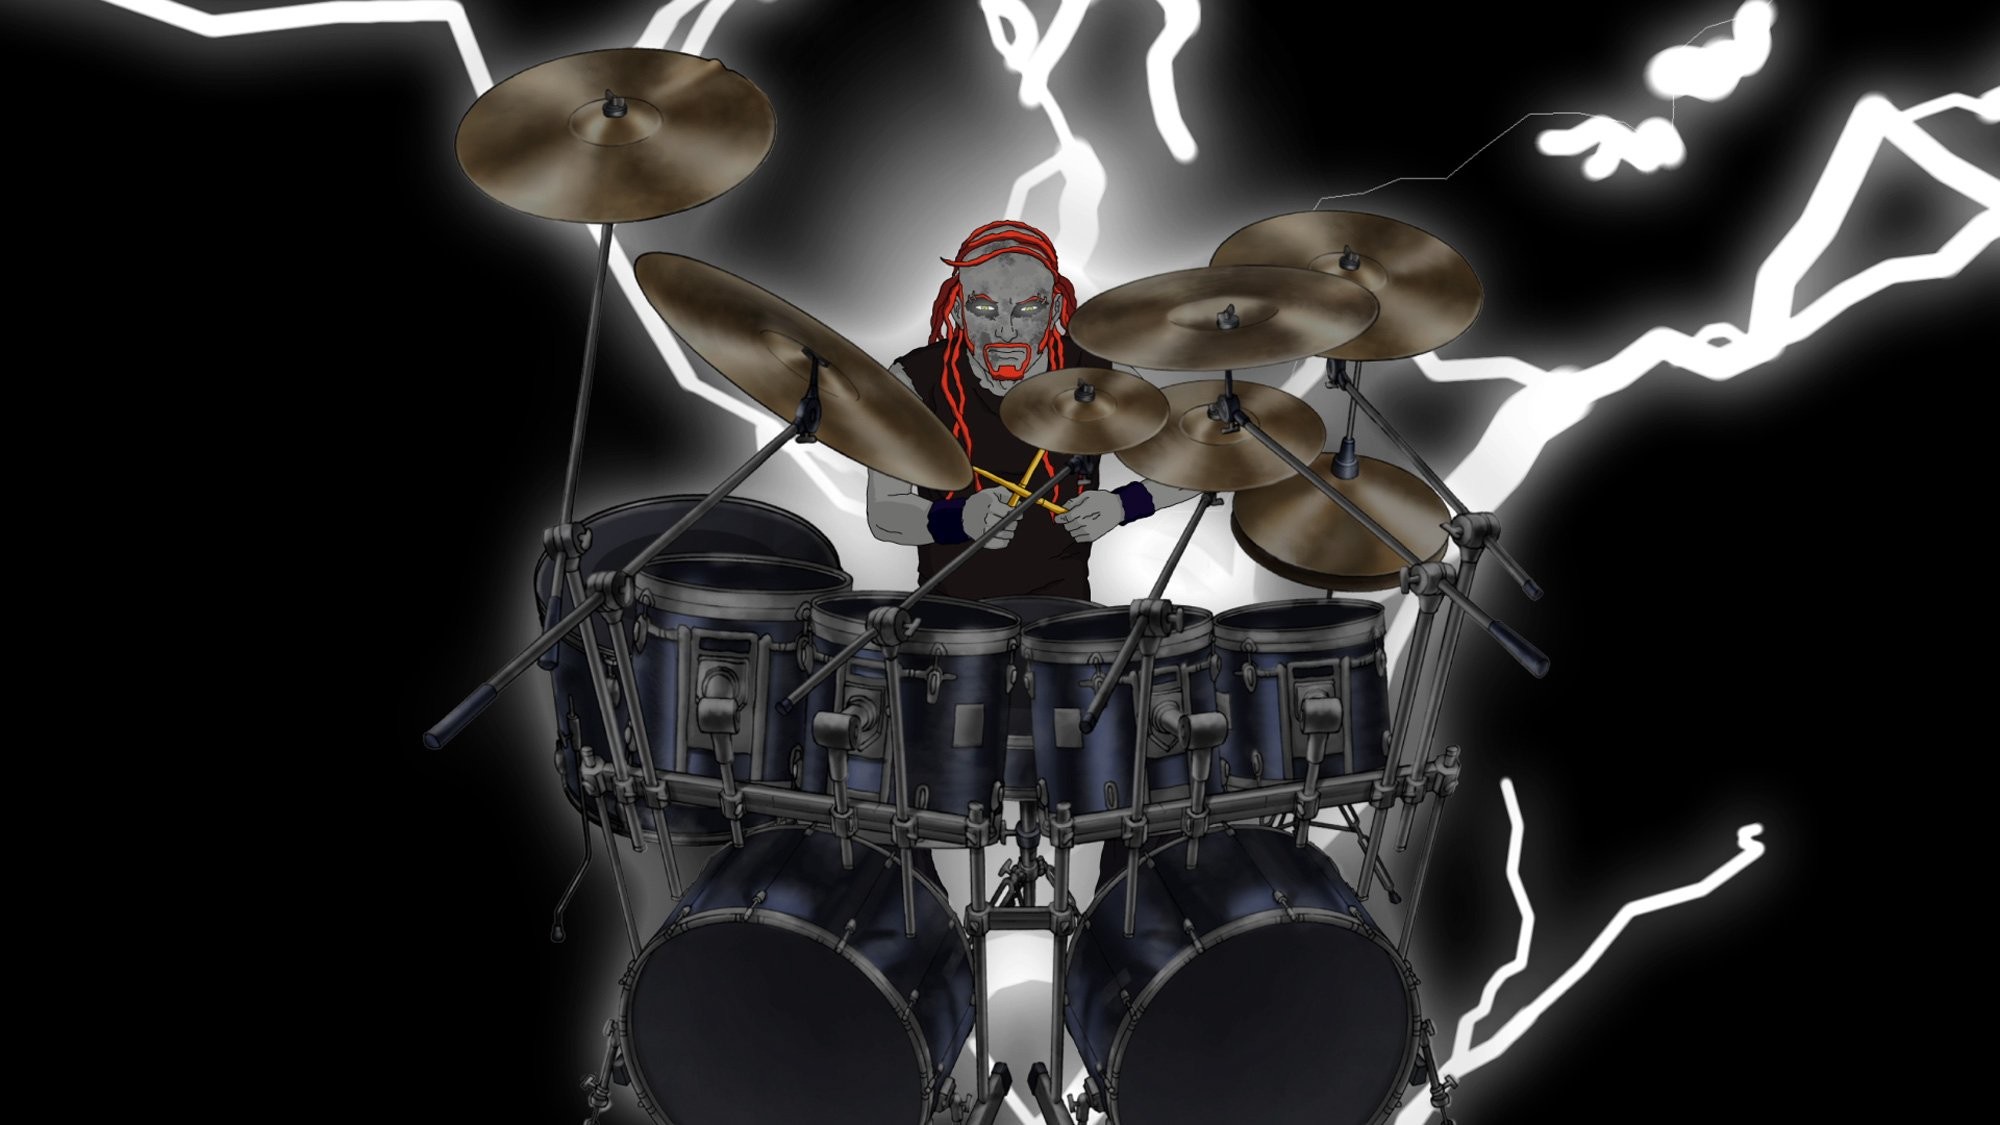 Explore Heavy Metal Music, Metalocalypse, And More - Heavy Metal Drum Wallpaper Hd - HD Wallpaper 